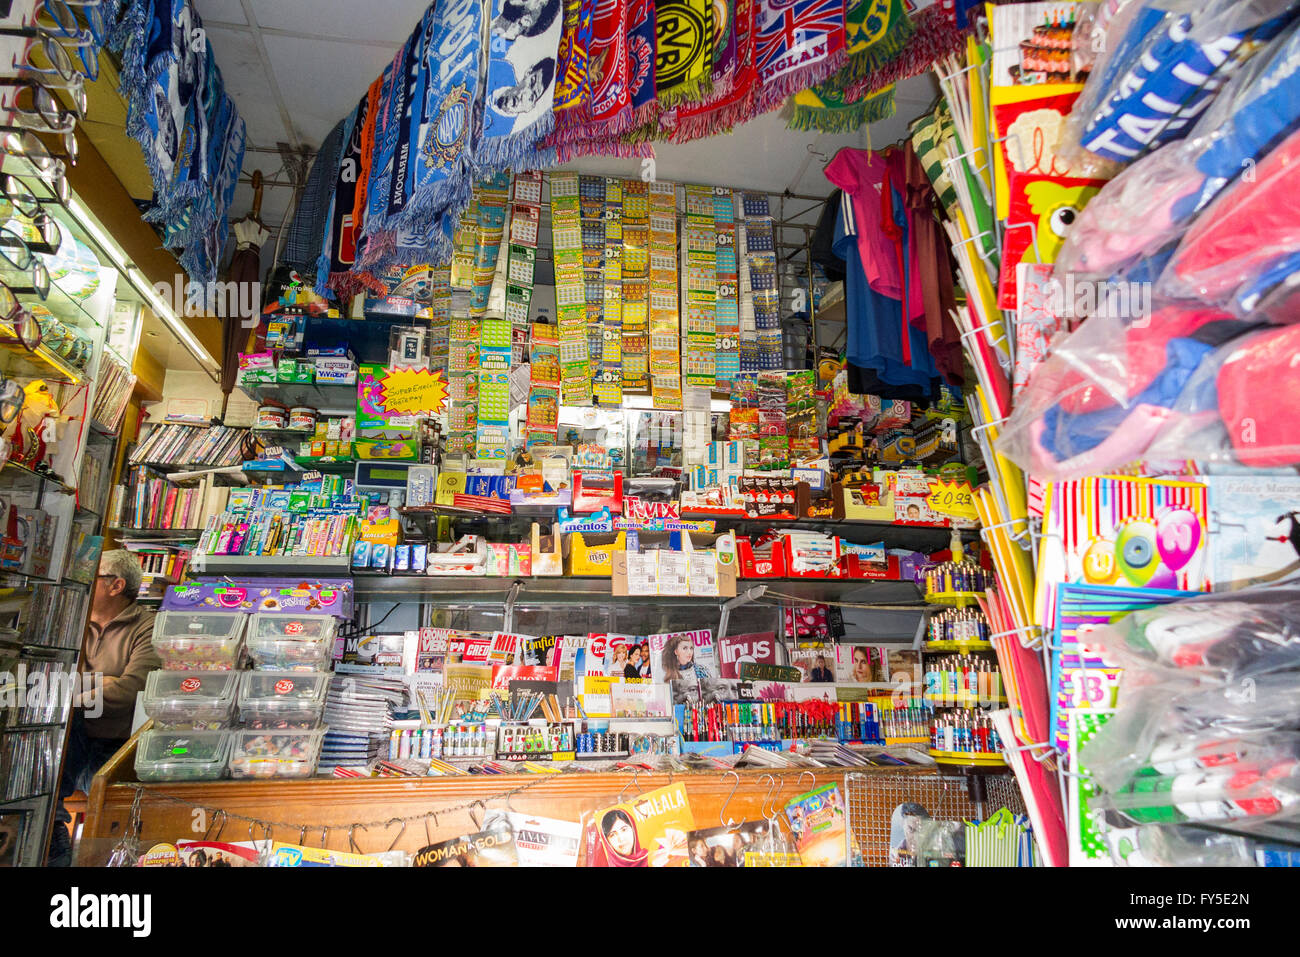 News-Agent Kiosk / Zeitungsladen Agenten Kioske / Kiosk Tabak Shop Verkauf von Zeitungen und Magazine / Zeitschriften. Neapel, Italien Stockfoto